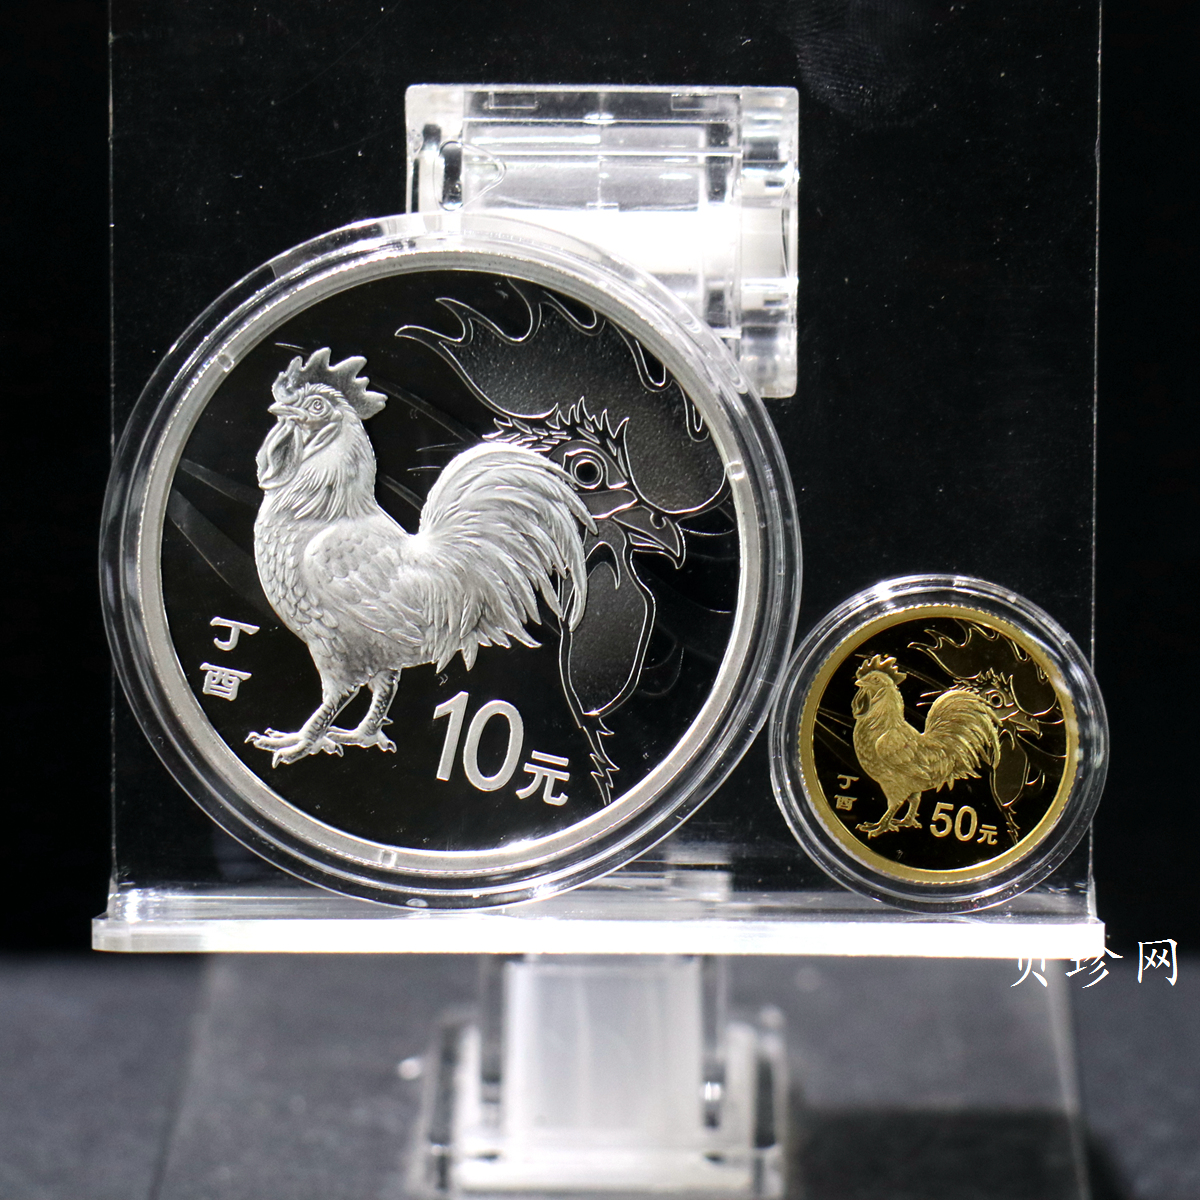 【179010】2017年丁酉（鸡）年生肖流通纪念币-精制金银币2枚一套